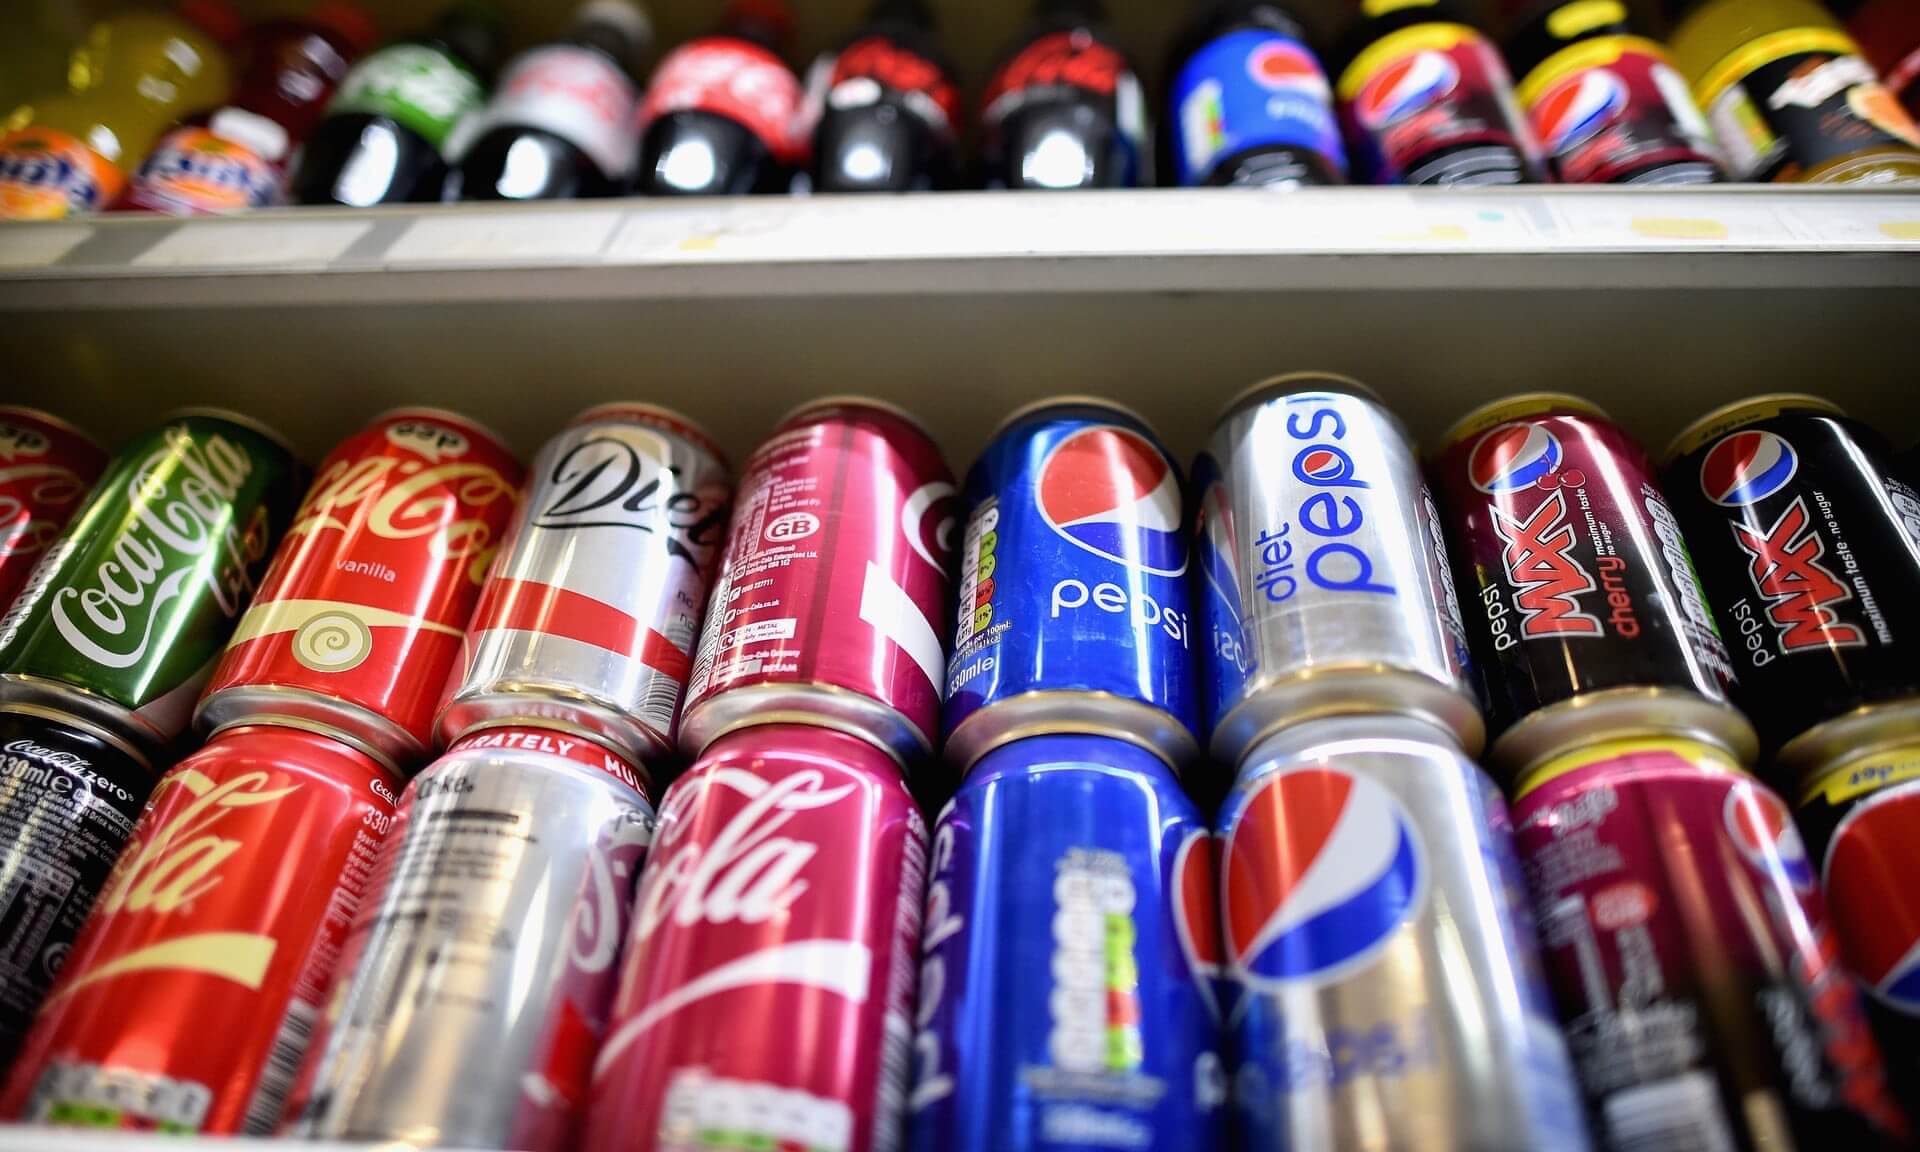 Häufiger Konsum von zuckerhaltigen Getränken — Ursache des vorzeitigen Todes